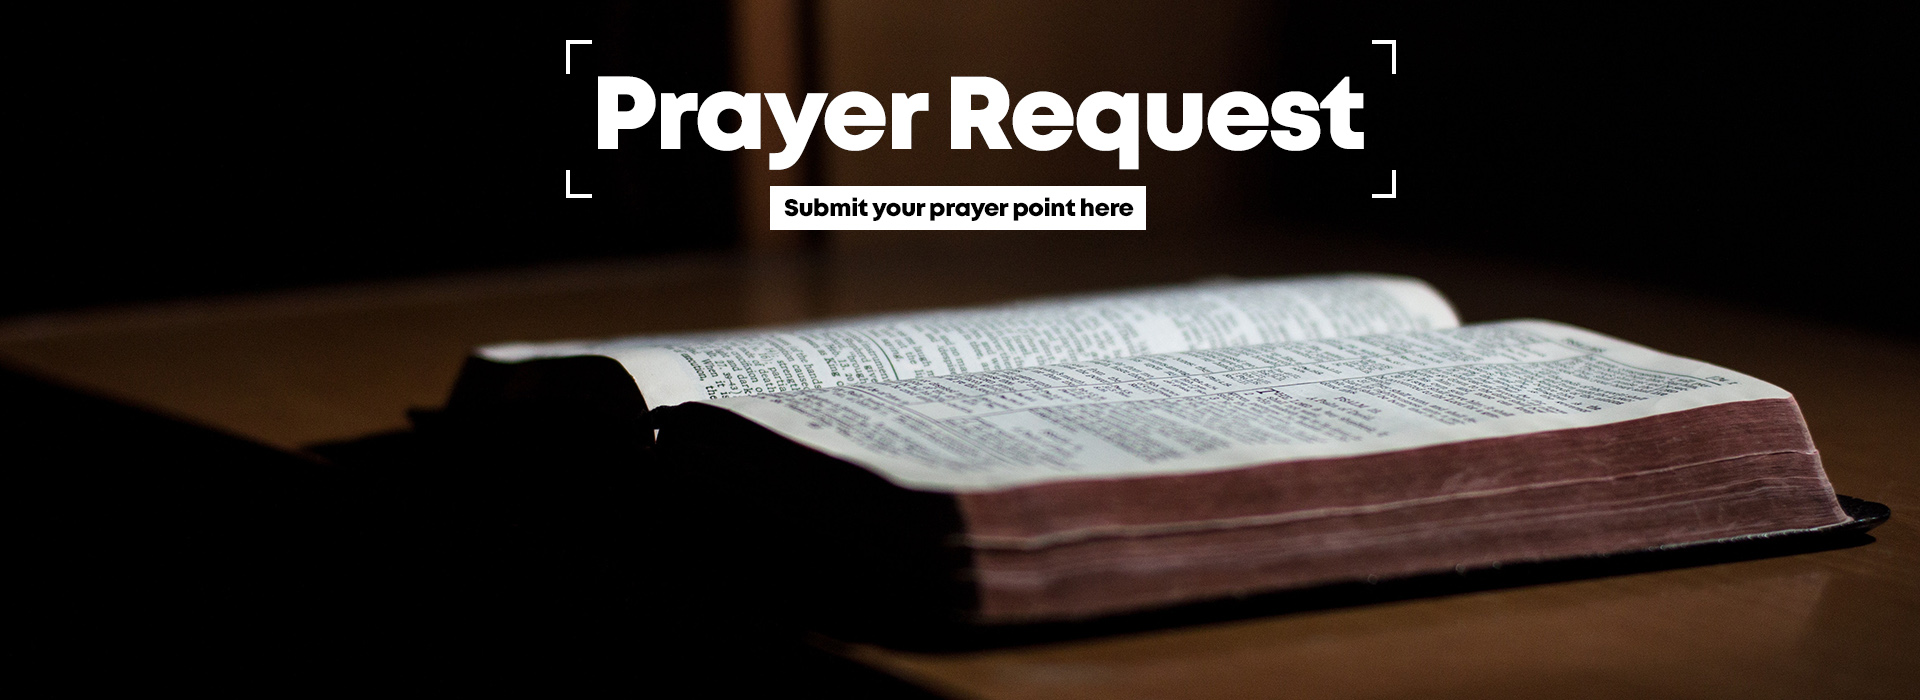 prayerrequest